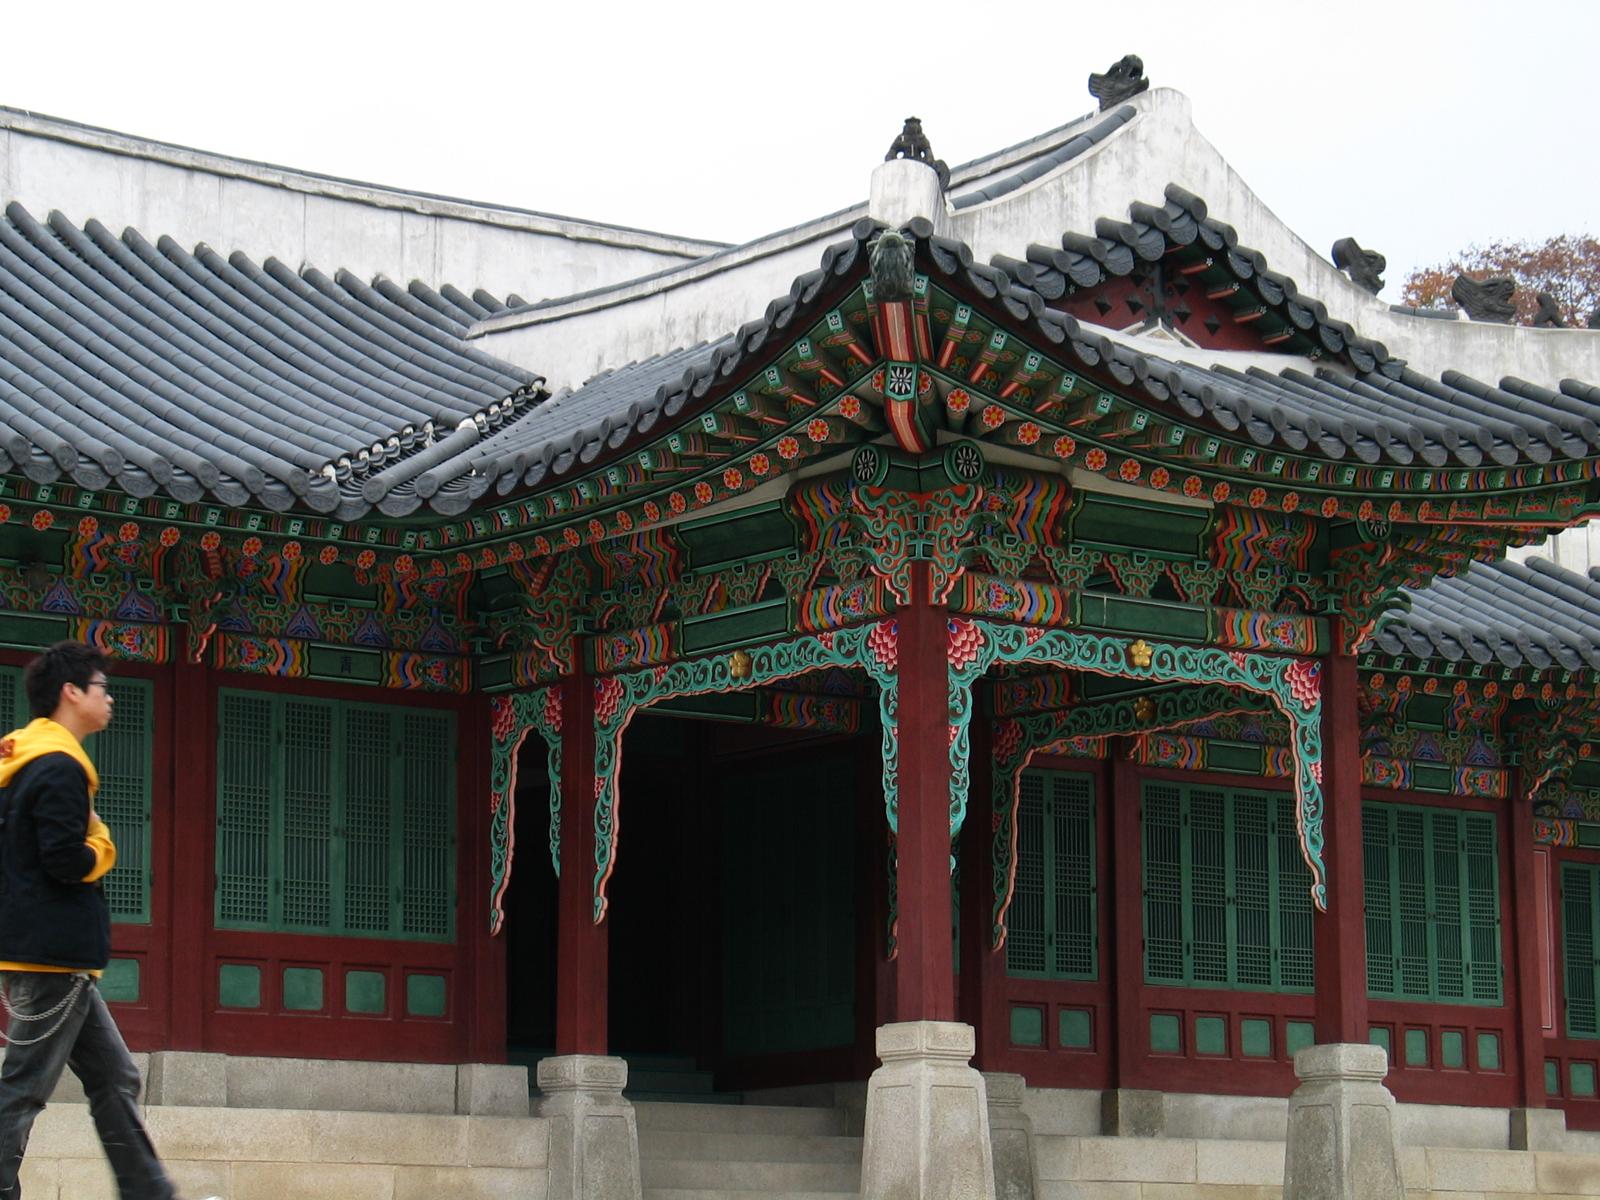 A pretty temple